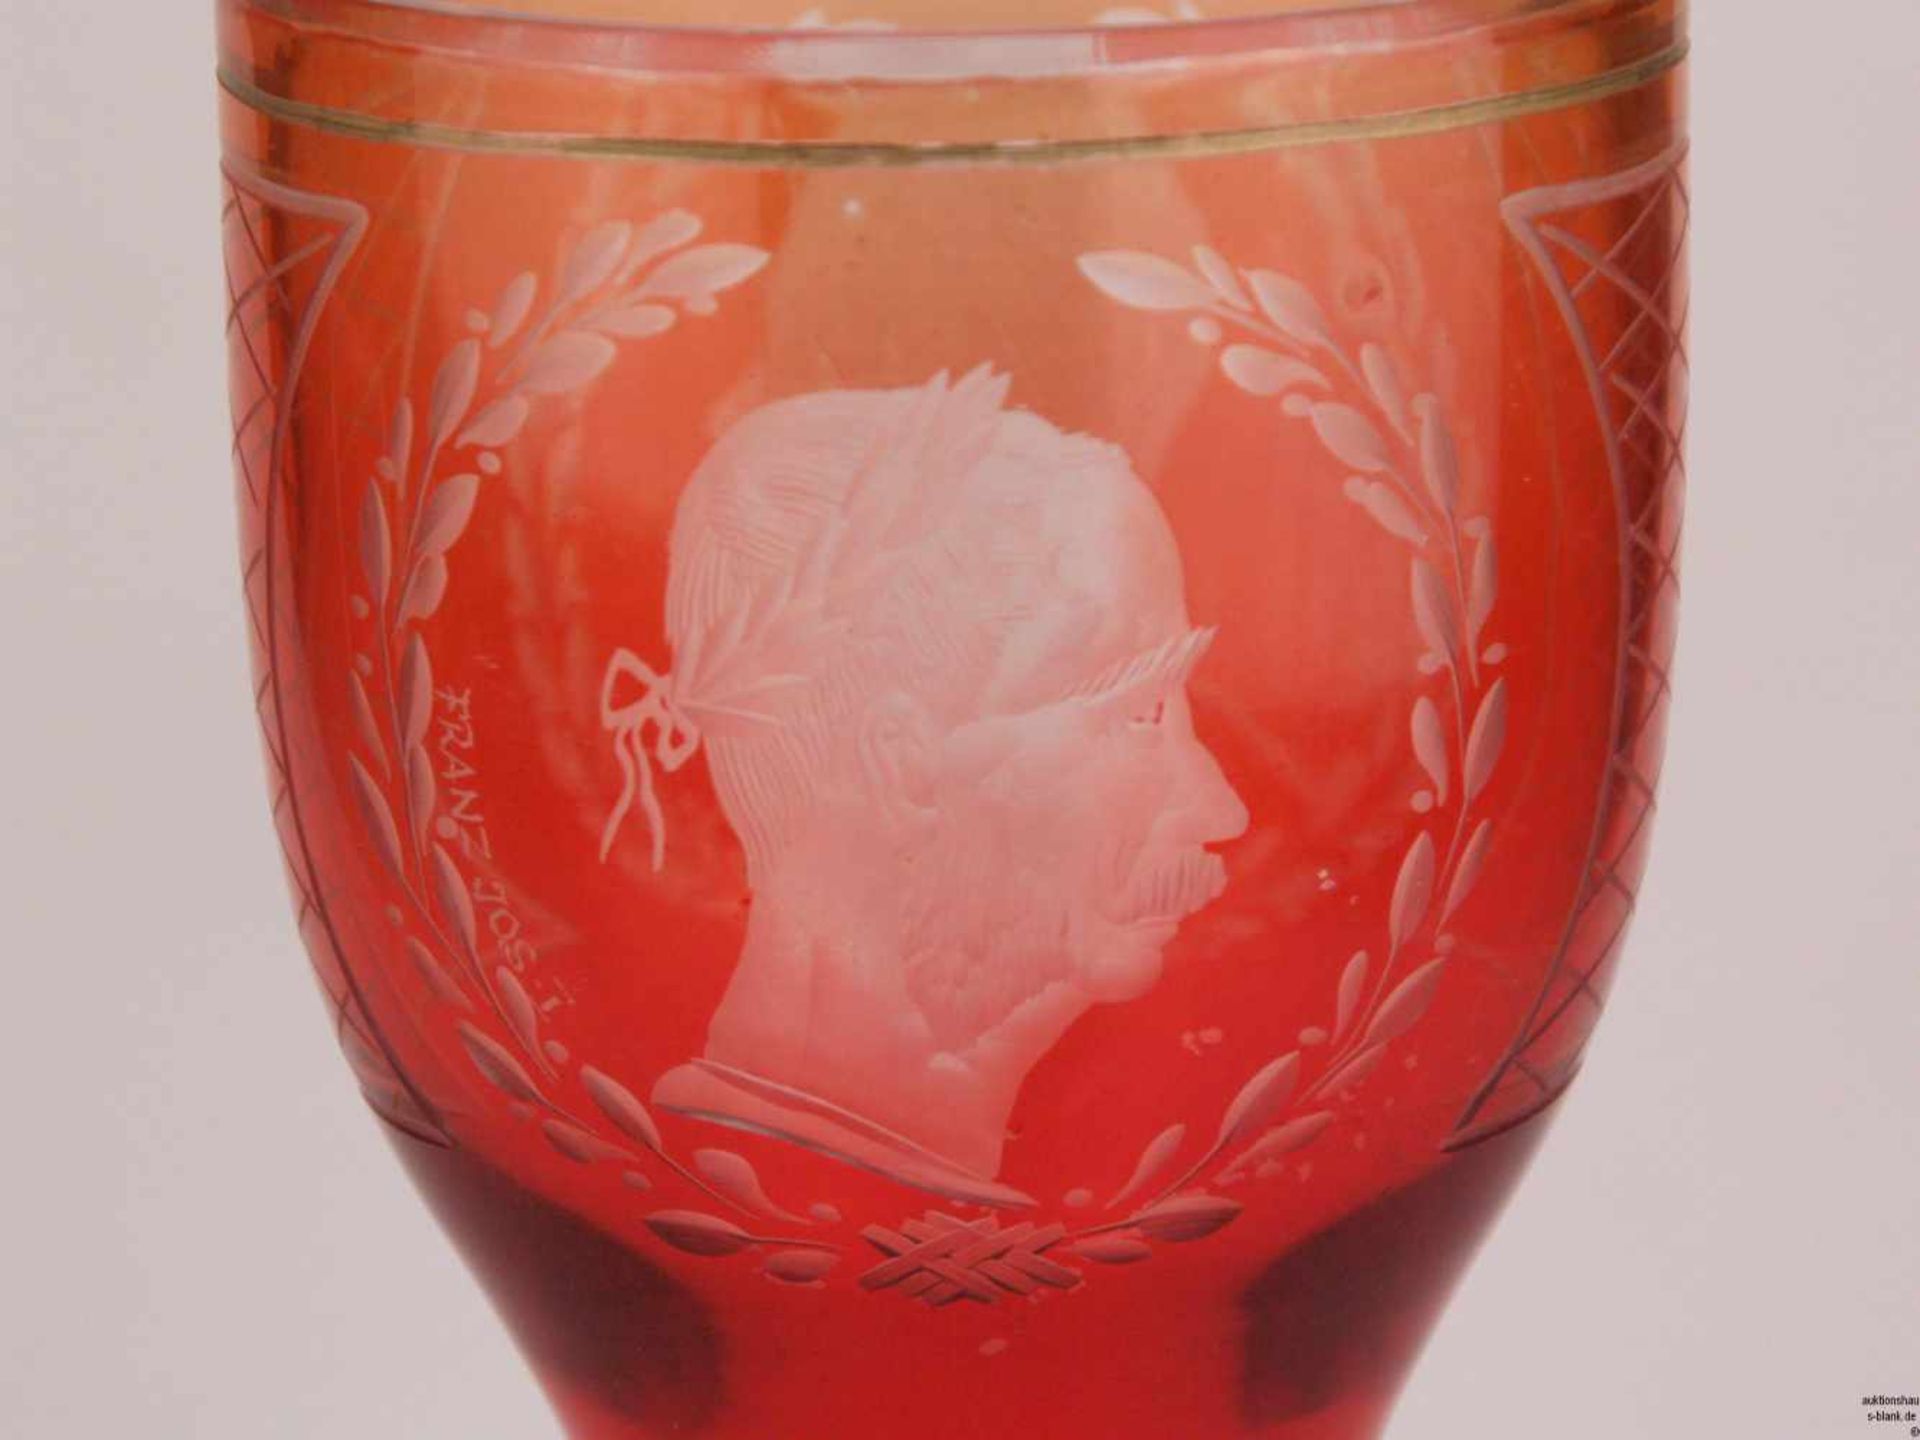 Pokalglas - Böhmen, rot, 6-eckiger Stand, Schaft facettiert, Ätzdekor mit Porträt von Kaiser Franz - Bild 2 aus 8